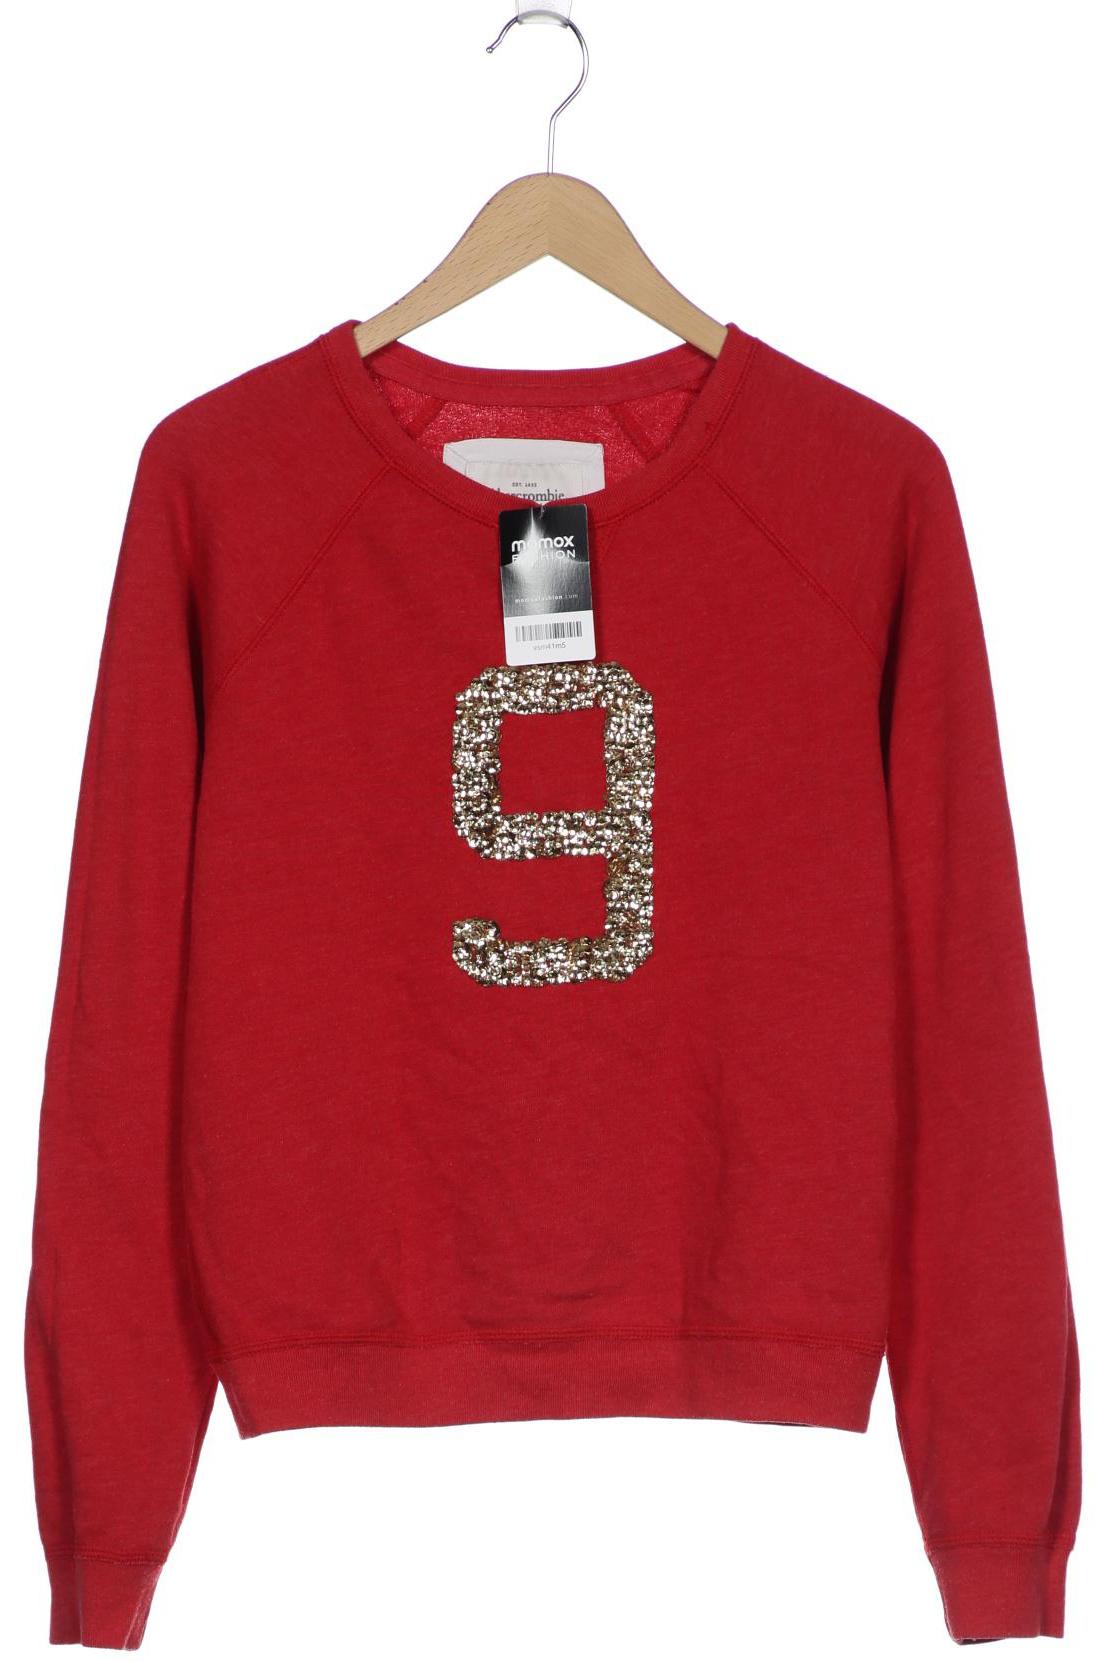 Abercrombie & Fitch Damen Sweatshirt, rot, Gr. 42 von Abercrombie & Fitch